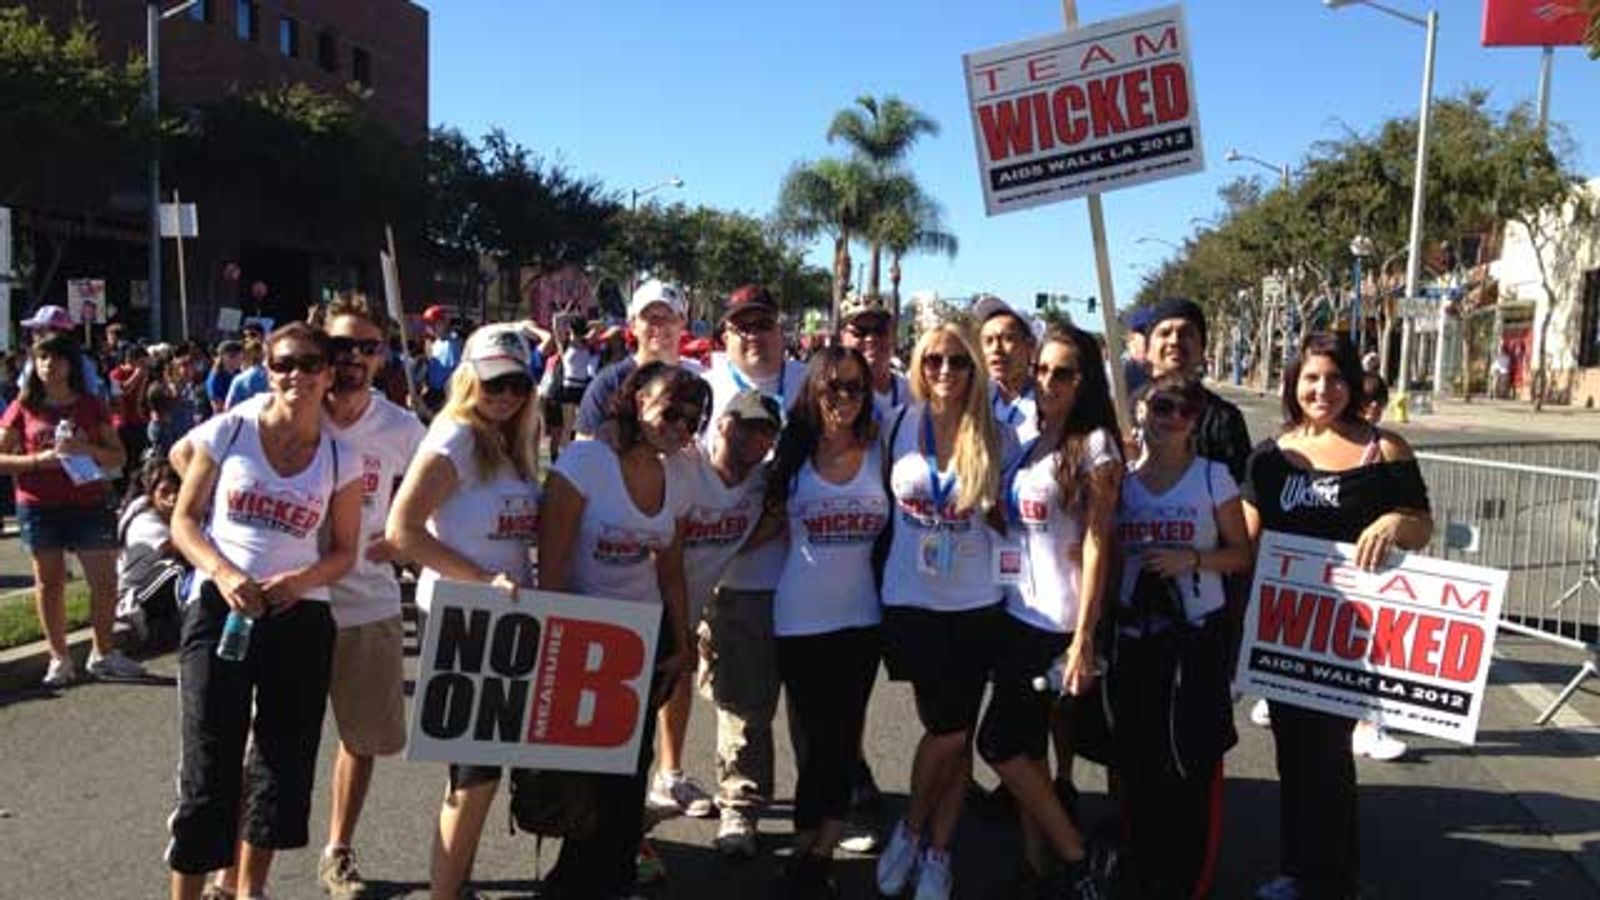 Jessica Drake Leads Team Wicked in 29th Annual AIDS Walk LA